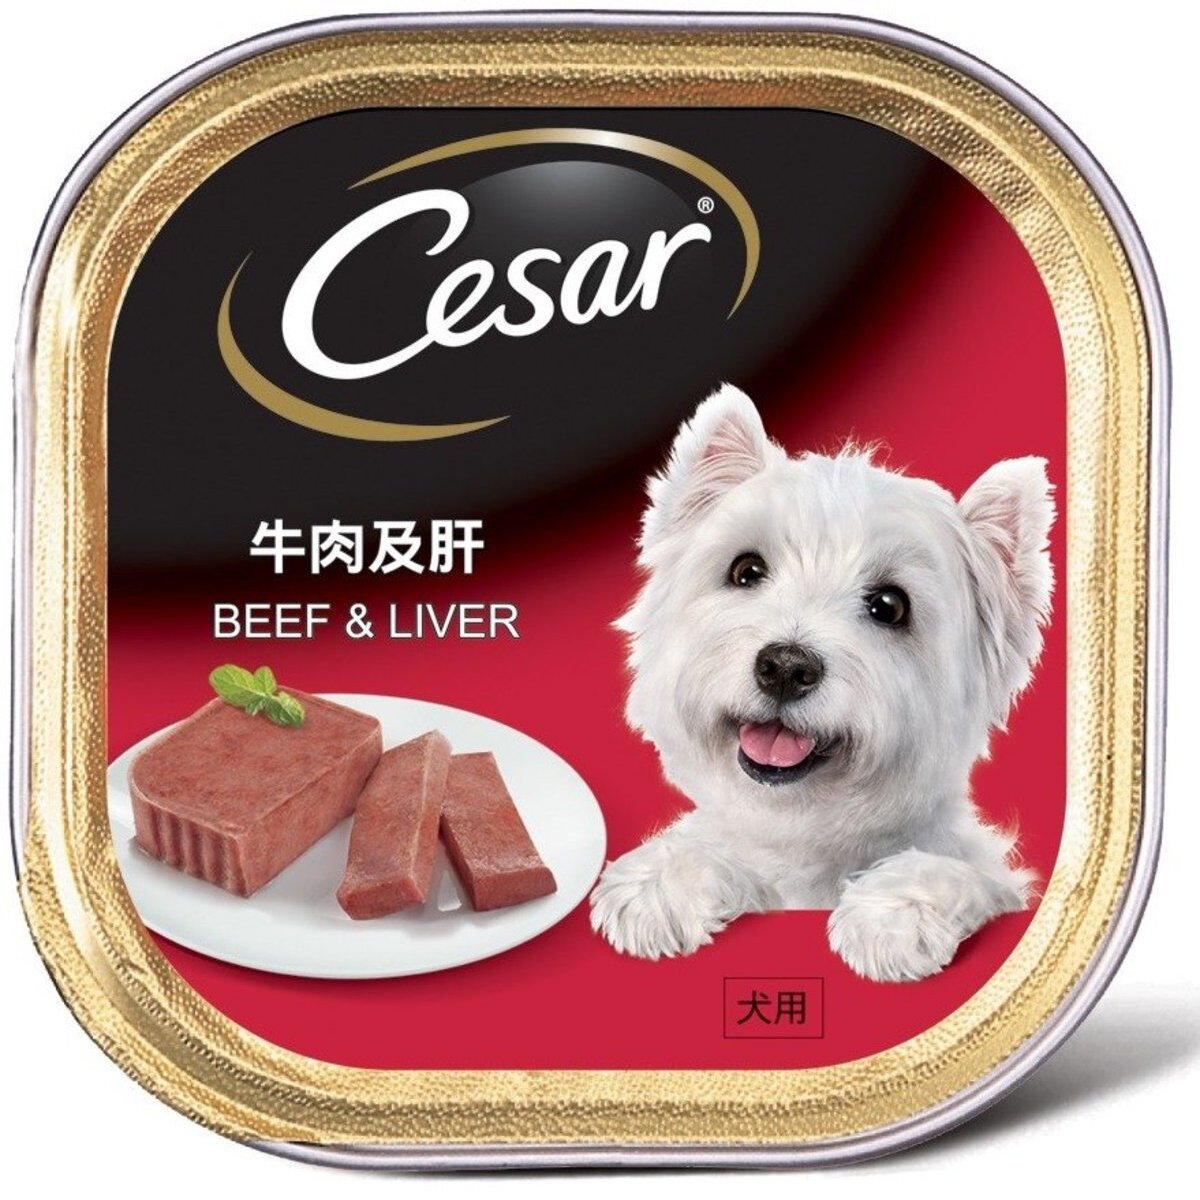 澳大利亚 西莎 - 纯鲜肉系列牛肉及肝(100克)狗餐盒 - 宠物狗狗粮